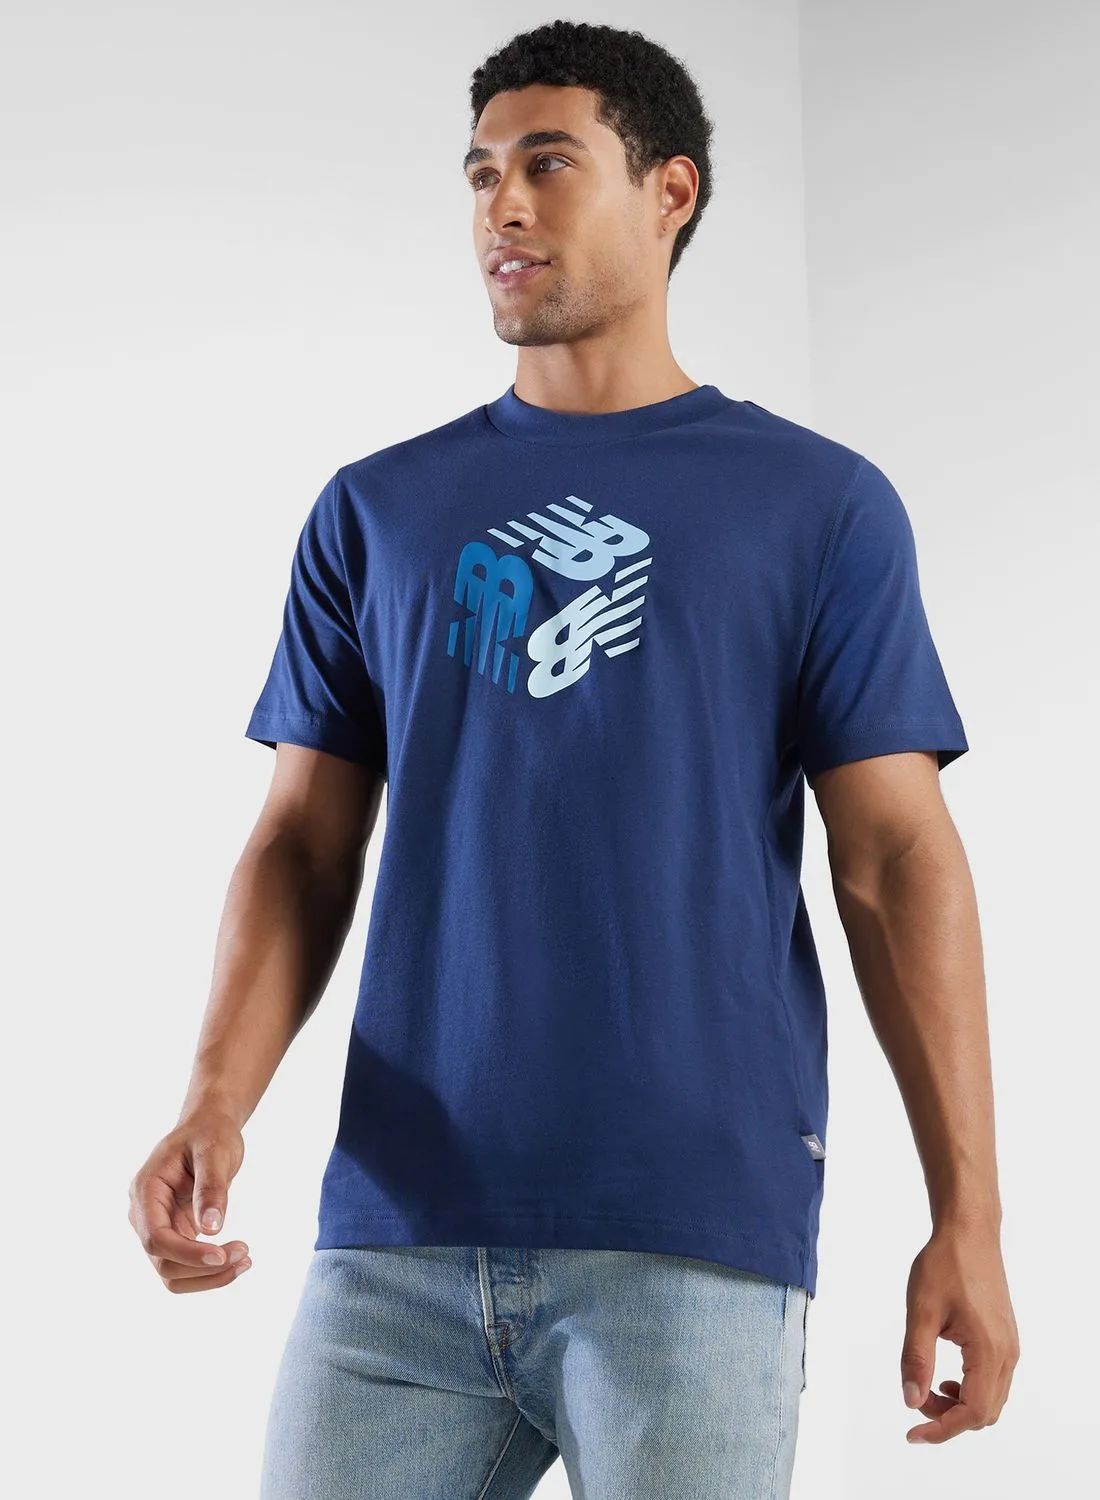 New Balance Explorer T-Shirt